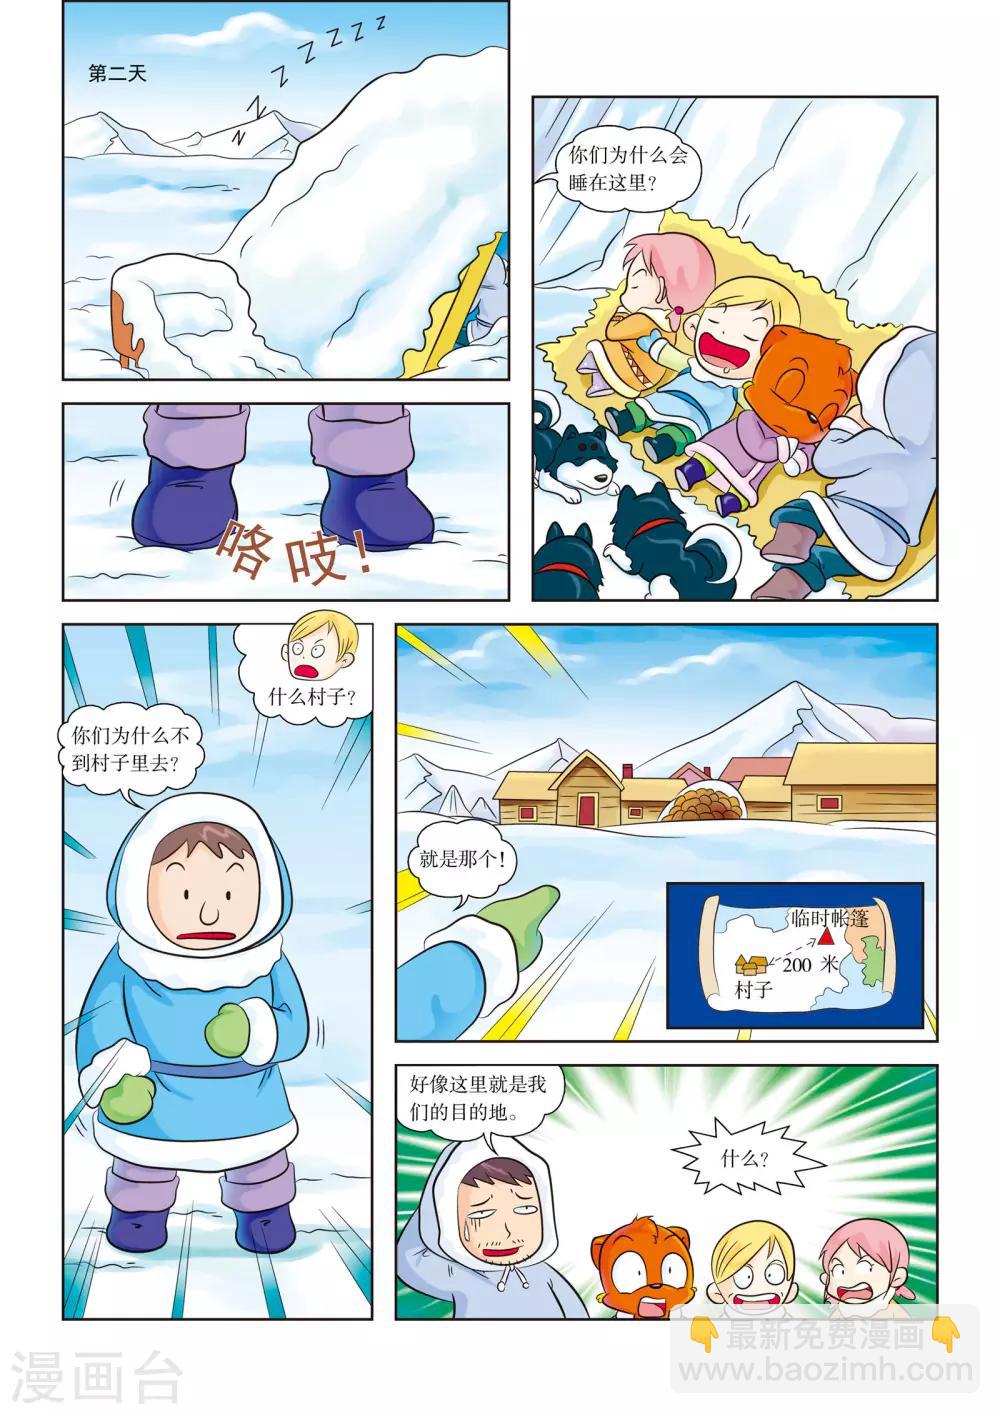 虹貓藍兔漫畫科學探險之阿拉斯加歷險記 - 最終話 暴風雪的洗禮 - 2